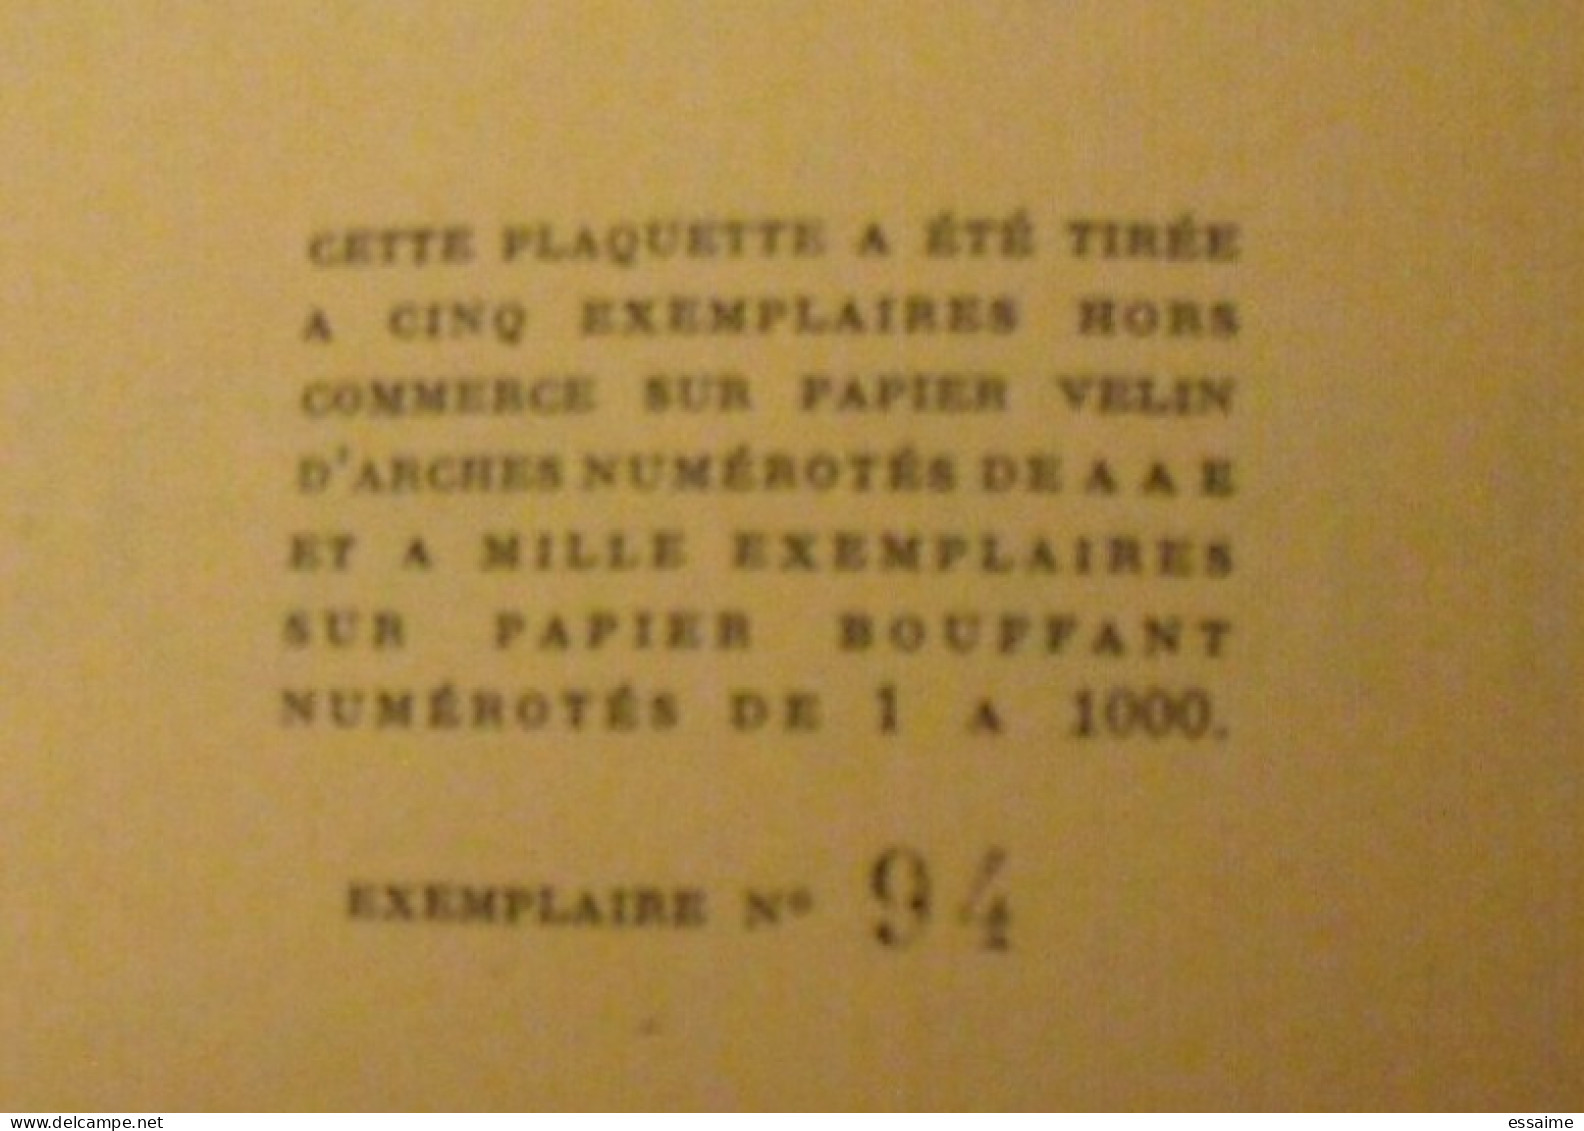 Histoire De Chez Nous. Louise-Paul Besnier. Alençon Orne Normandie. 1955.  Exemplaire Numéroté N° 94 - Normandie